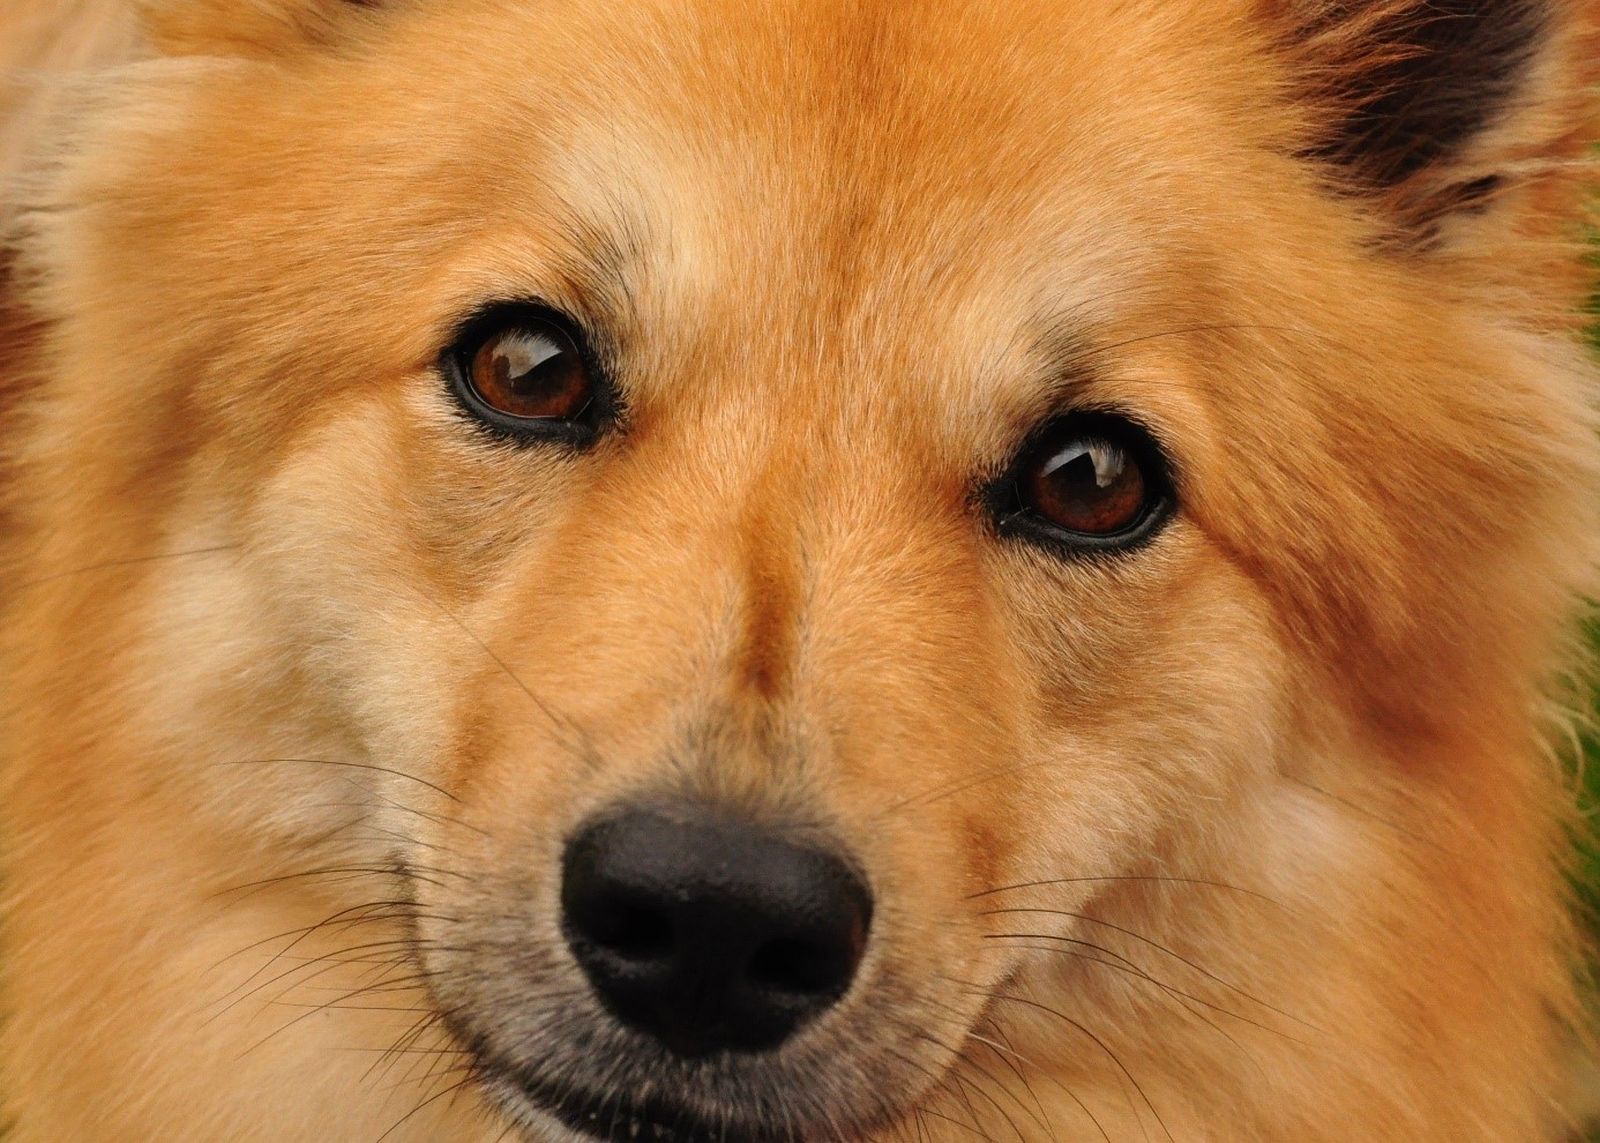 Ein rotbrauner spitzähnlicher Hund im Großformat frontal aufgenommen schaut direkt den Betrachter fixierend an